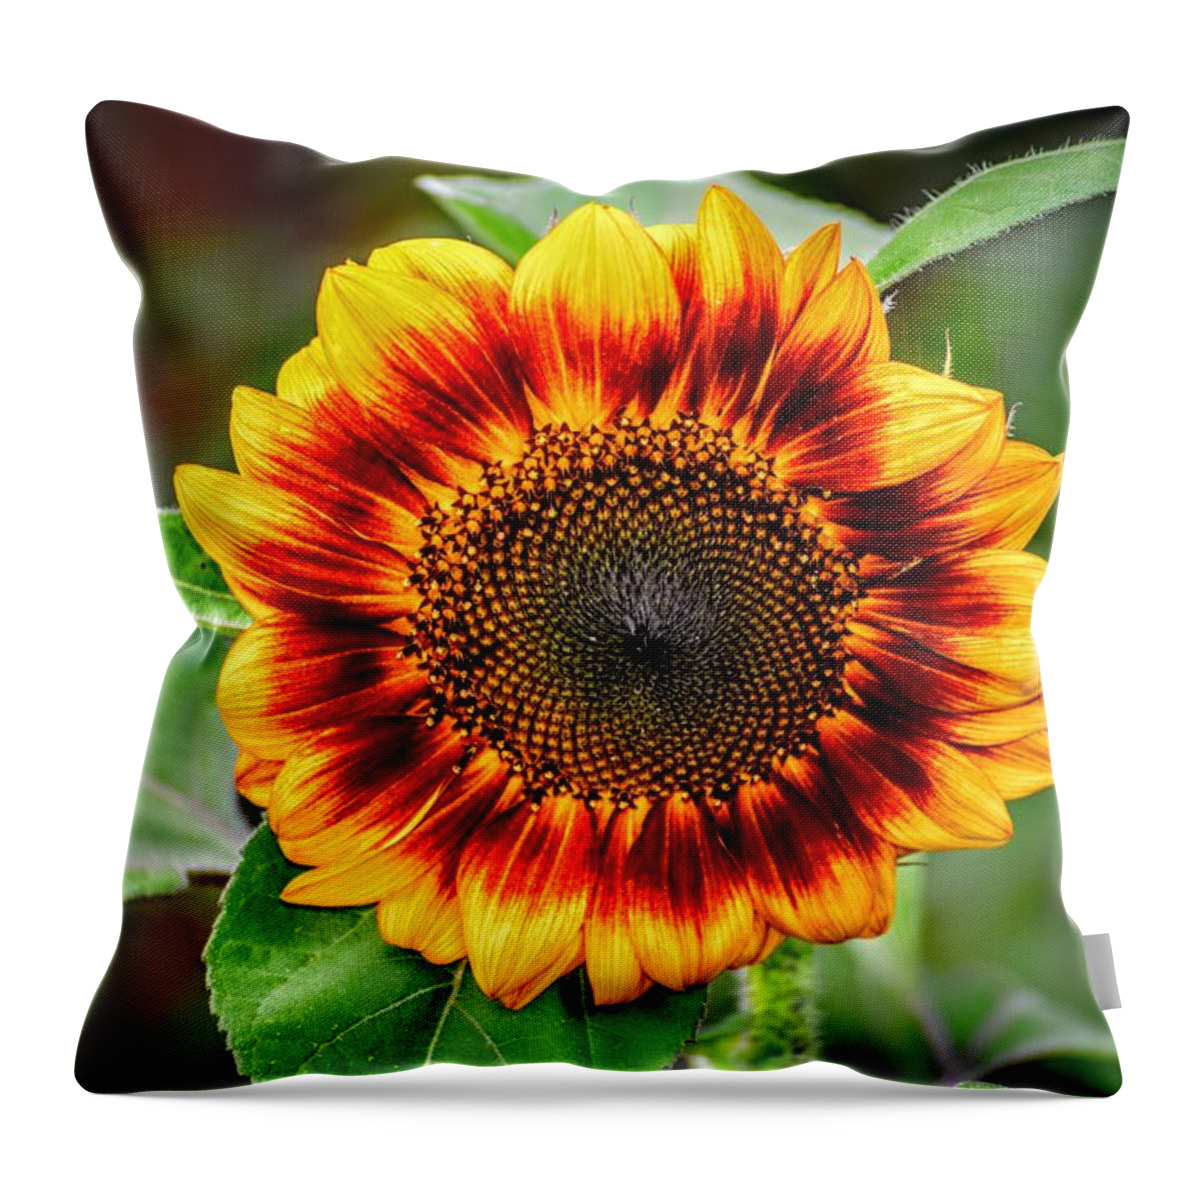 Sunflower Throw Pillow featuring the photograph Garden Sequence by Michael Brungardt